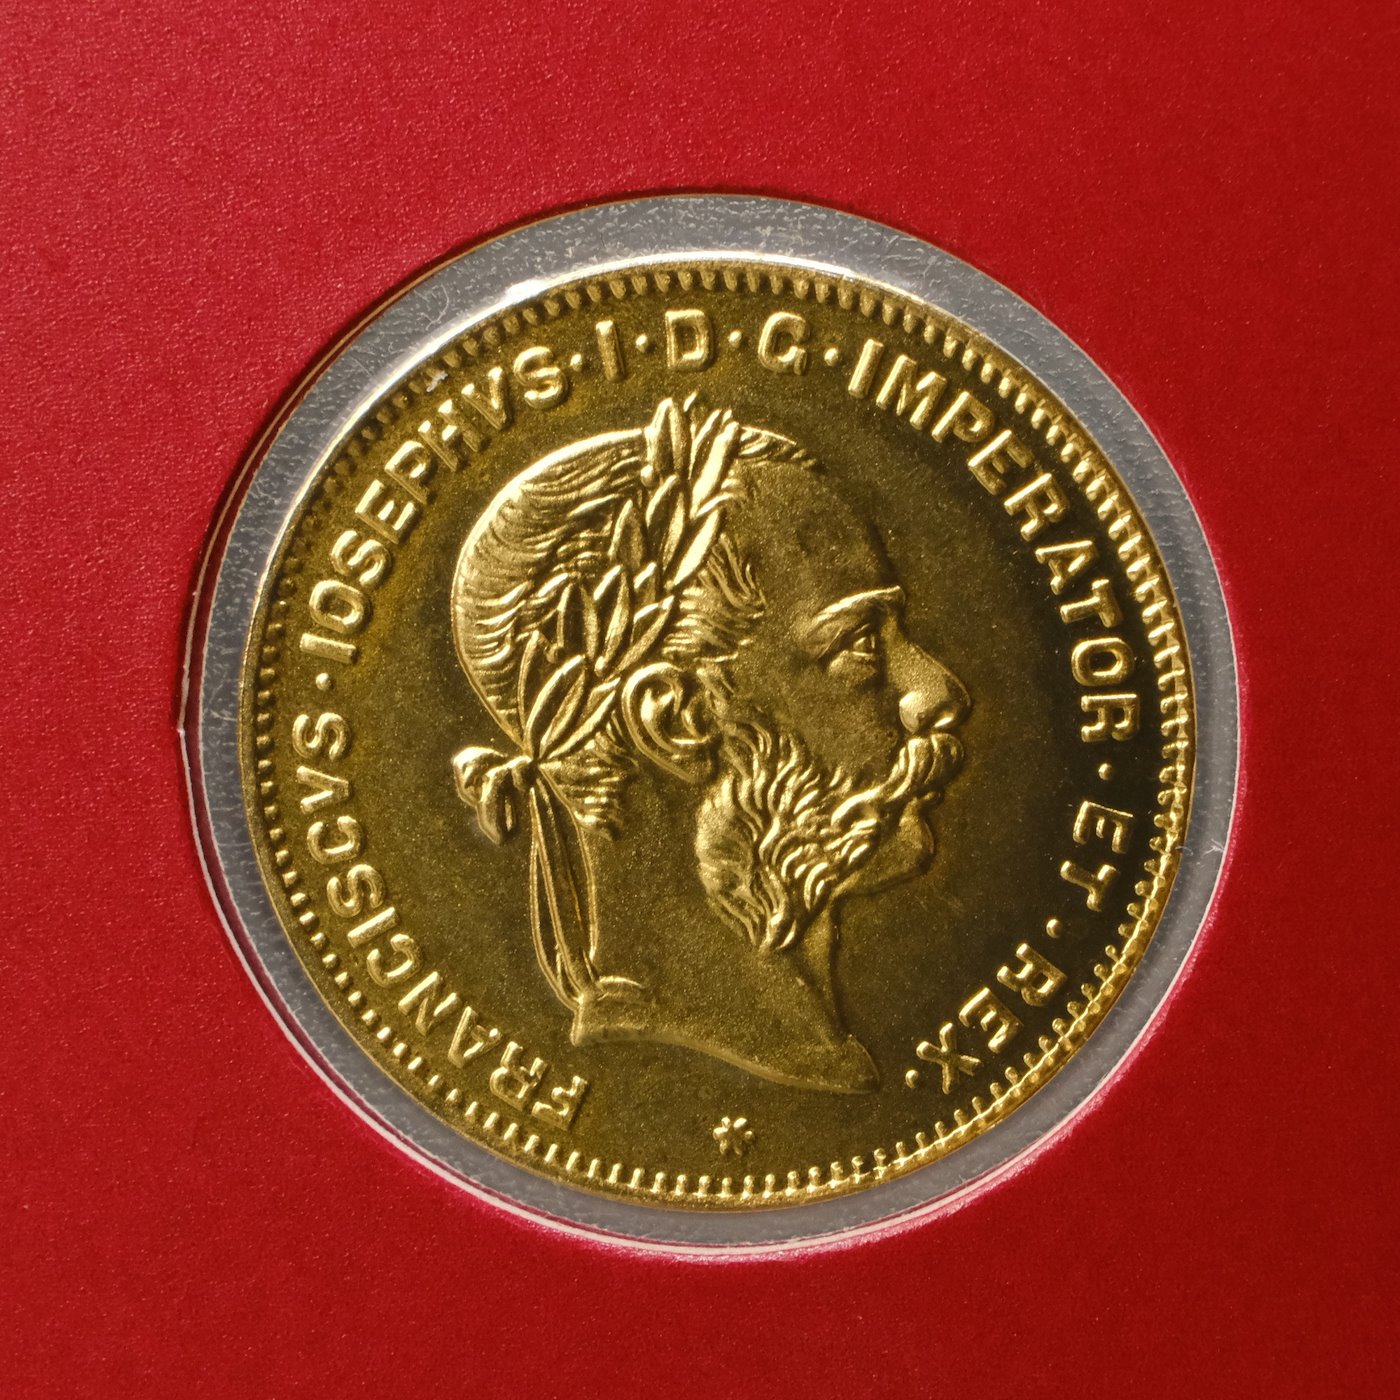 Mince - Rakousko Uhersko zlatý 4 zlatník/10frank 1892 rakouský pokračující ražba, zlato 900/1000, hrubá hmotnost mince 3,226g